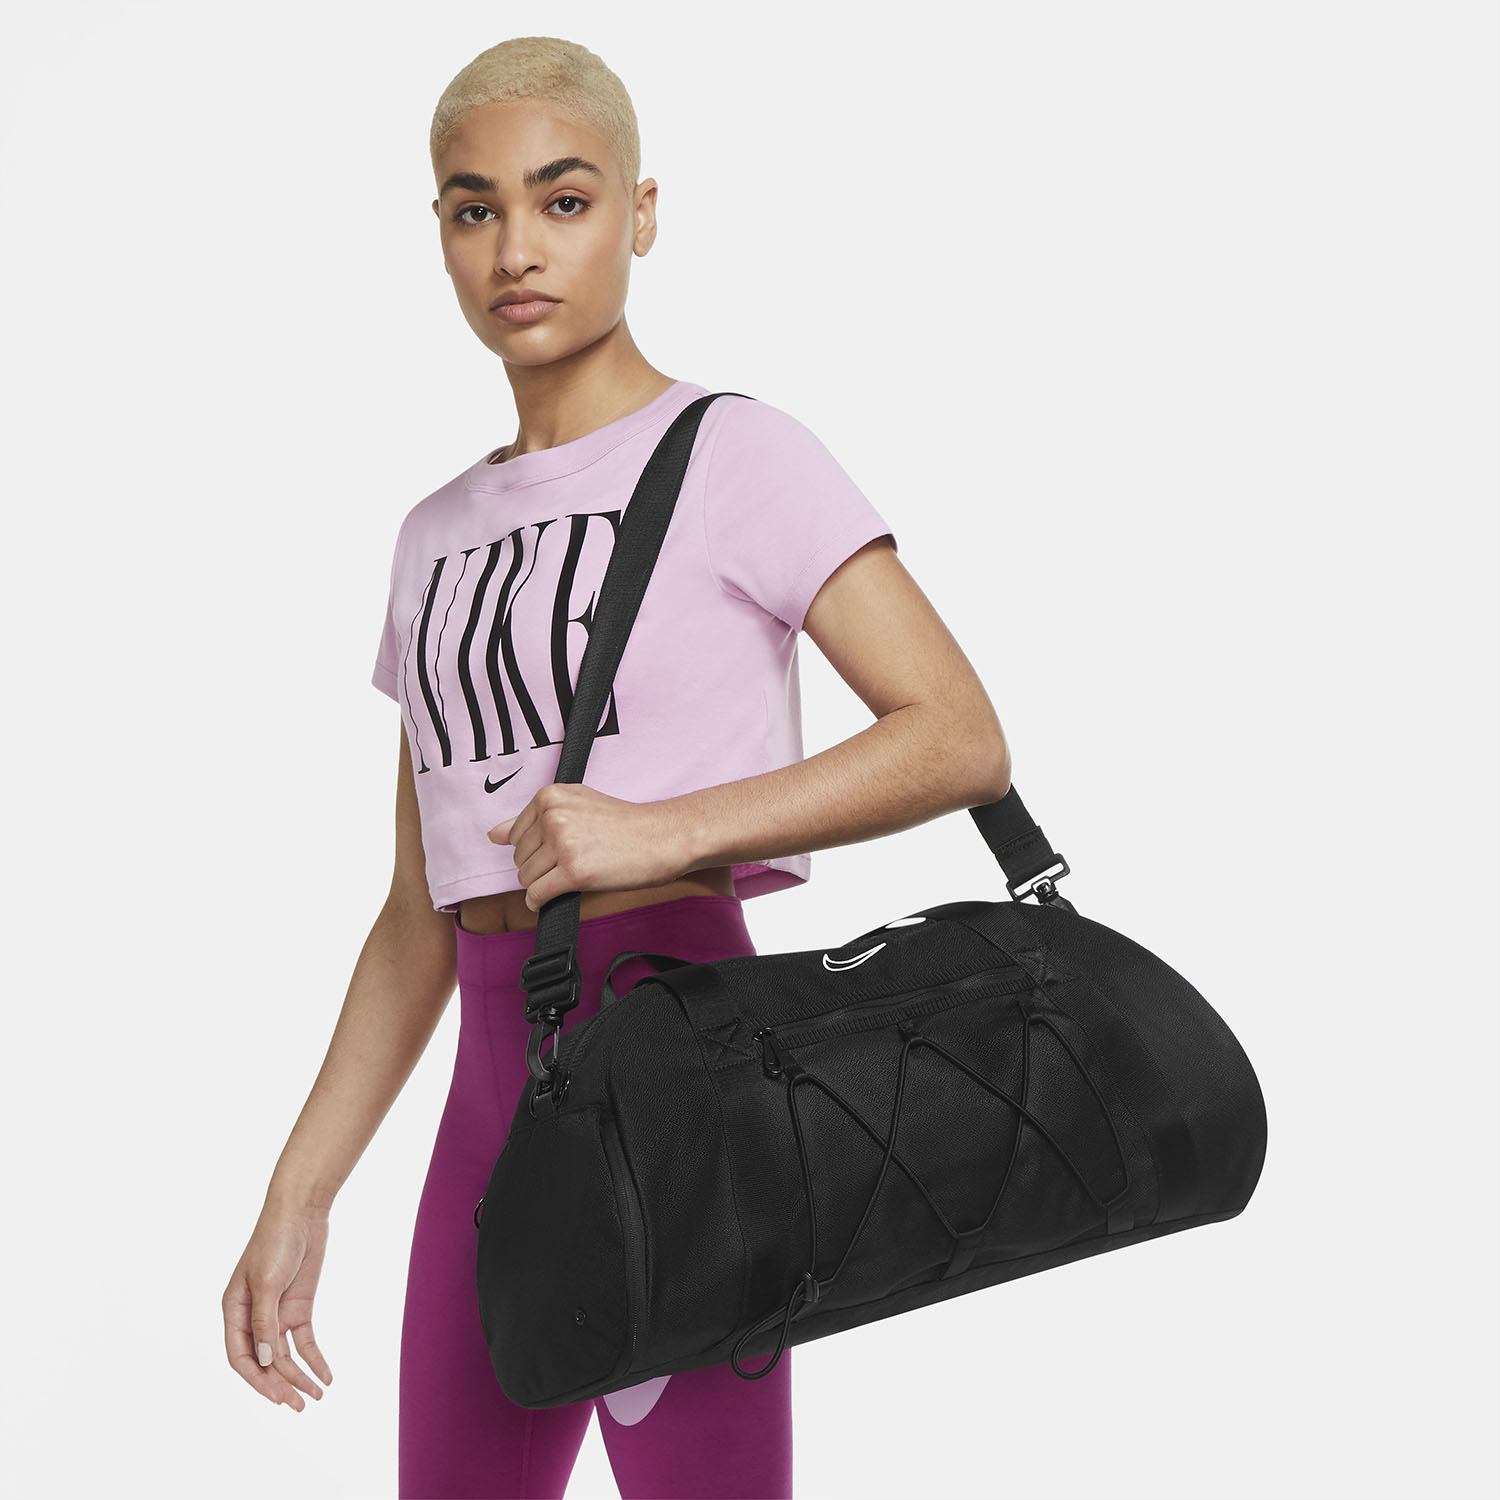 Nike One Club Training Bag - Black/White